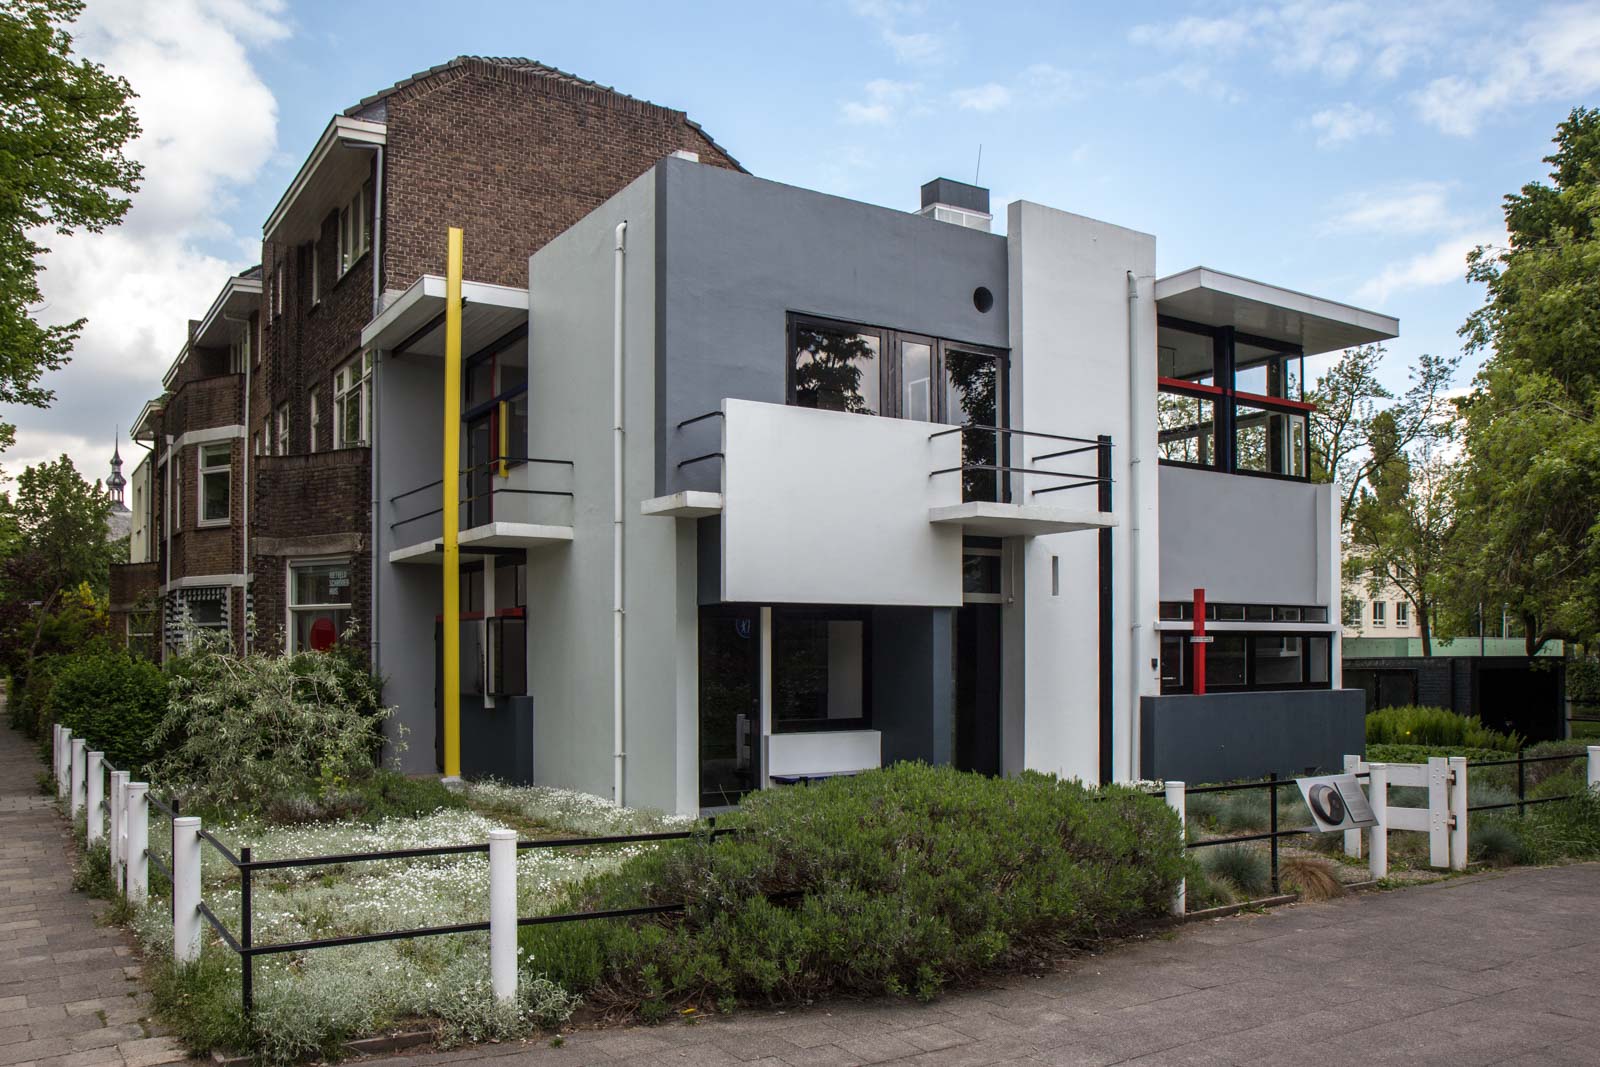 Rietveld Schroder House Utrecht The Netherlands